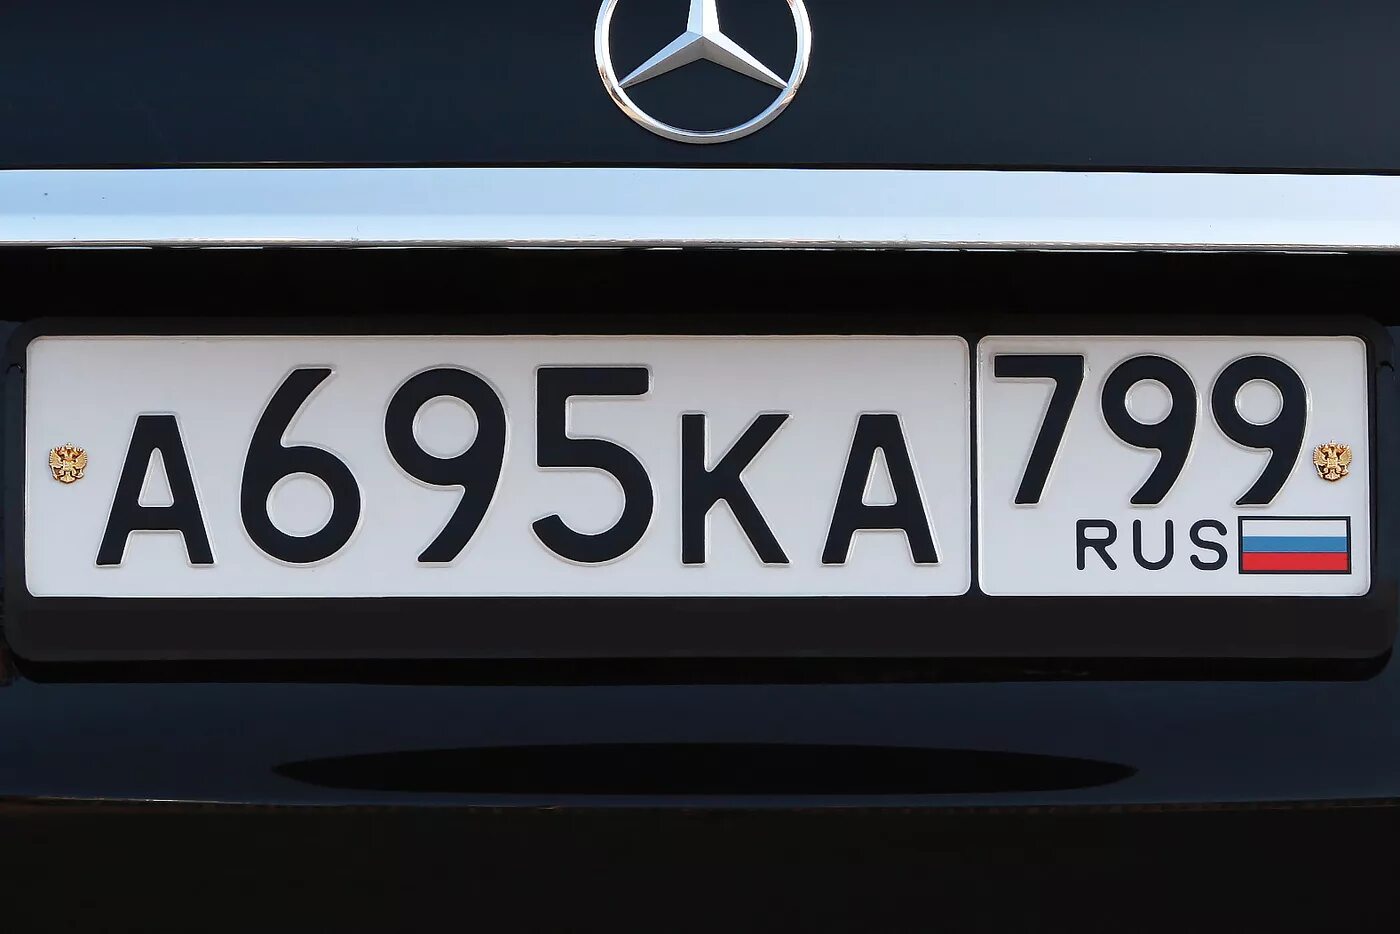 Автомобильный номер. Автомобильный номерной знак. Госномер автомобиля. Российские автомобильные номера. Nomer